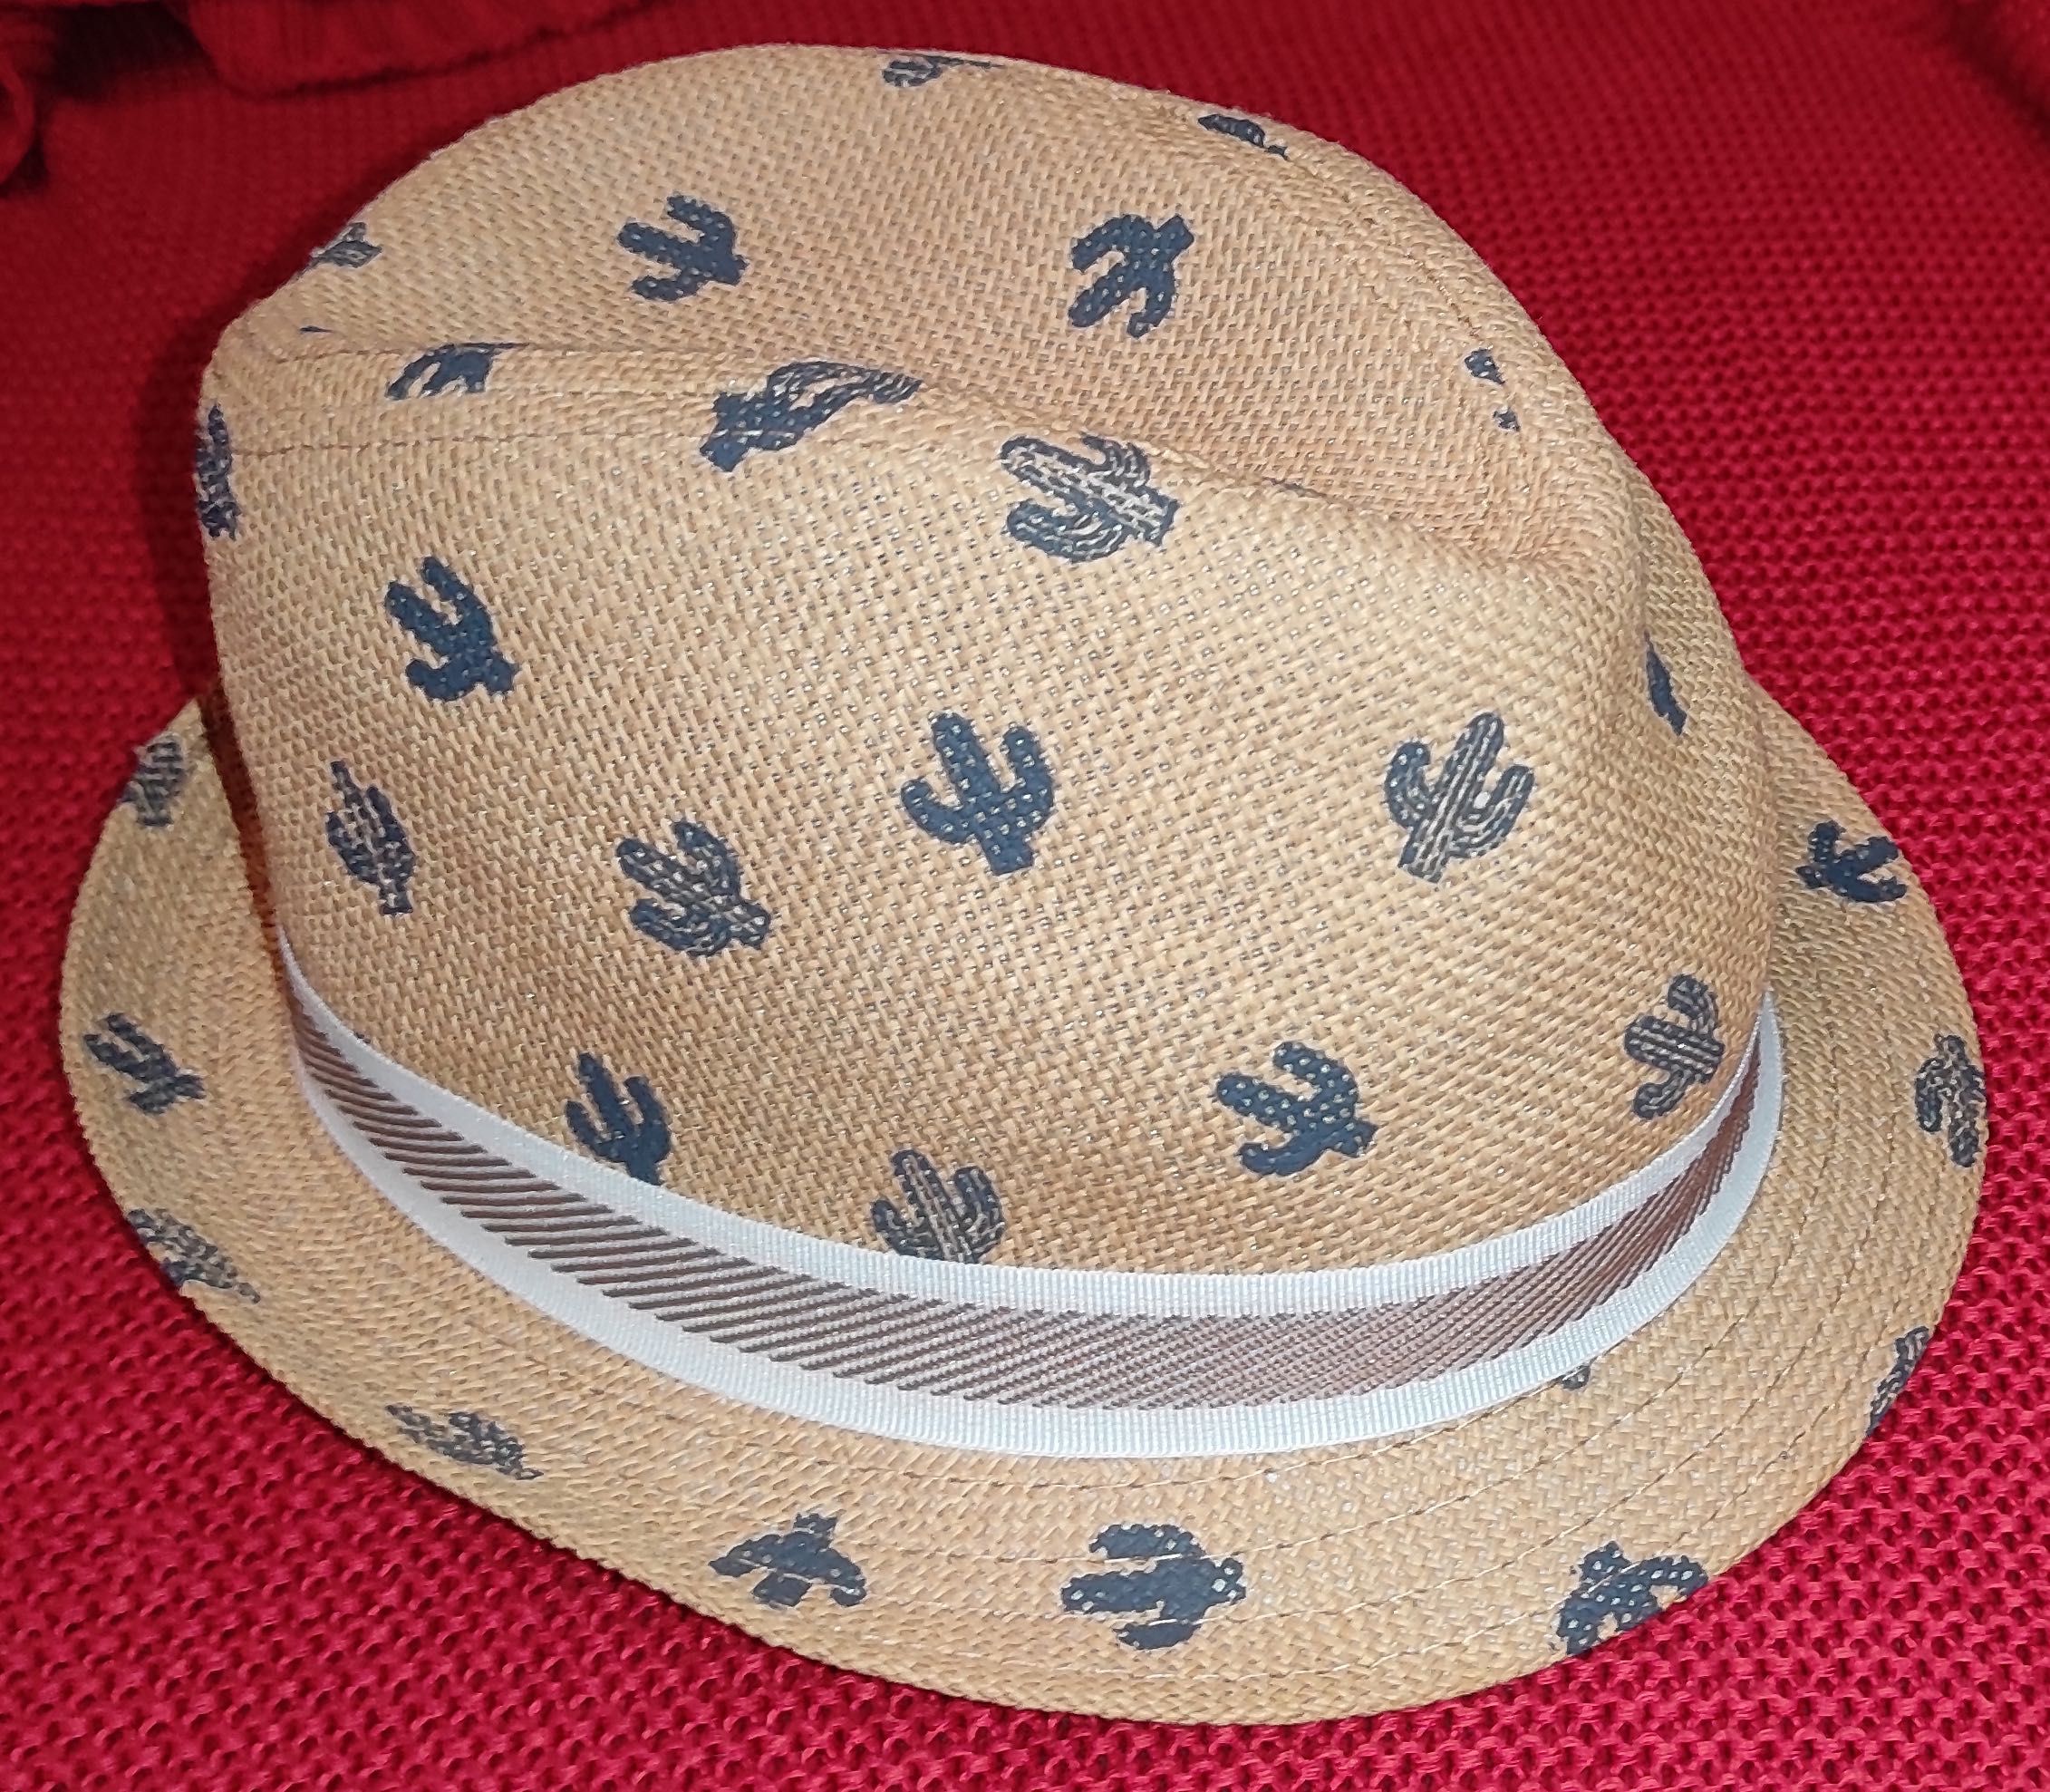 OKAIDI OBAIBI Słomkowy letni kapelusz przeciwsłoneczny, rozmiar 48